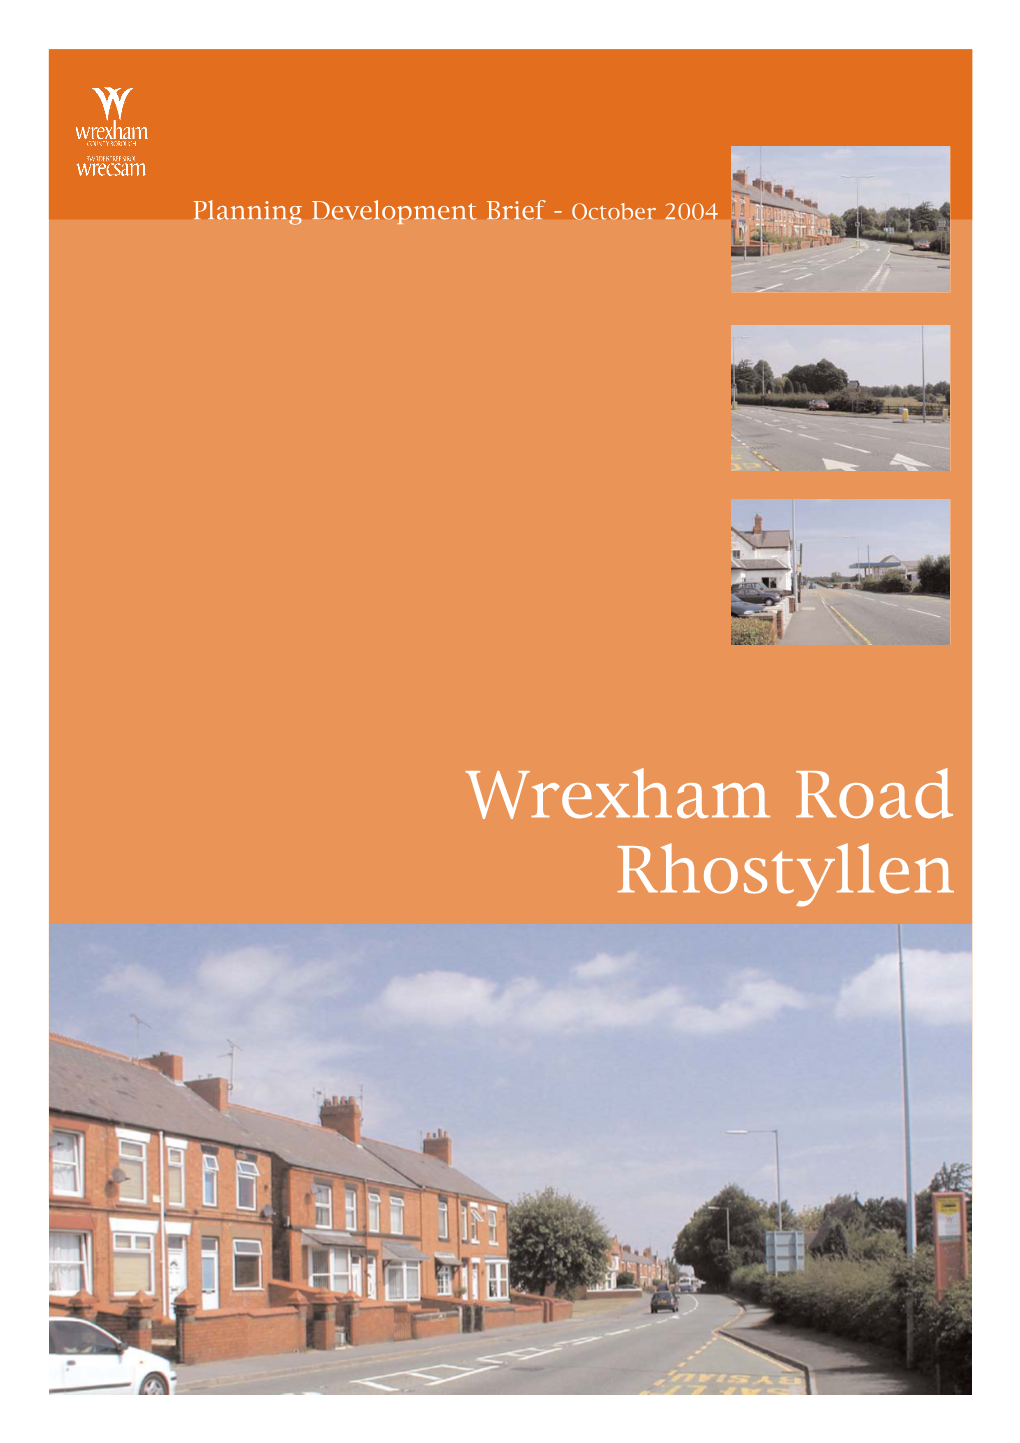 Wrexham Road Rhostyllen Wrexham Road, Rhostyllen Planning Development Brief